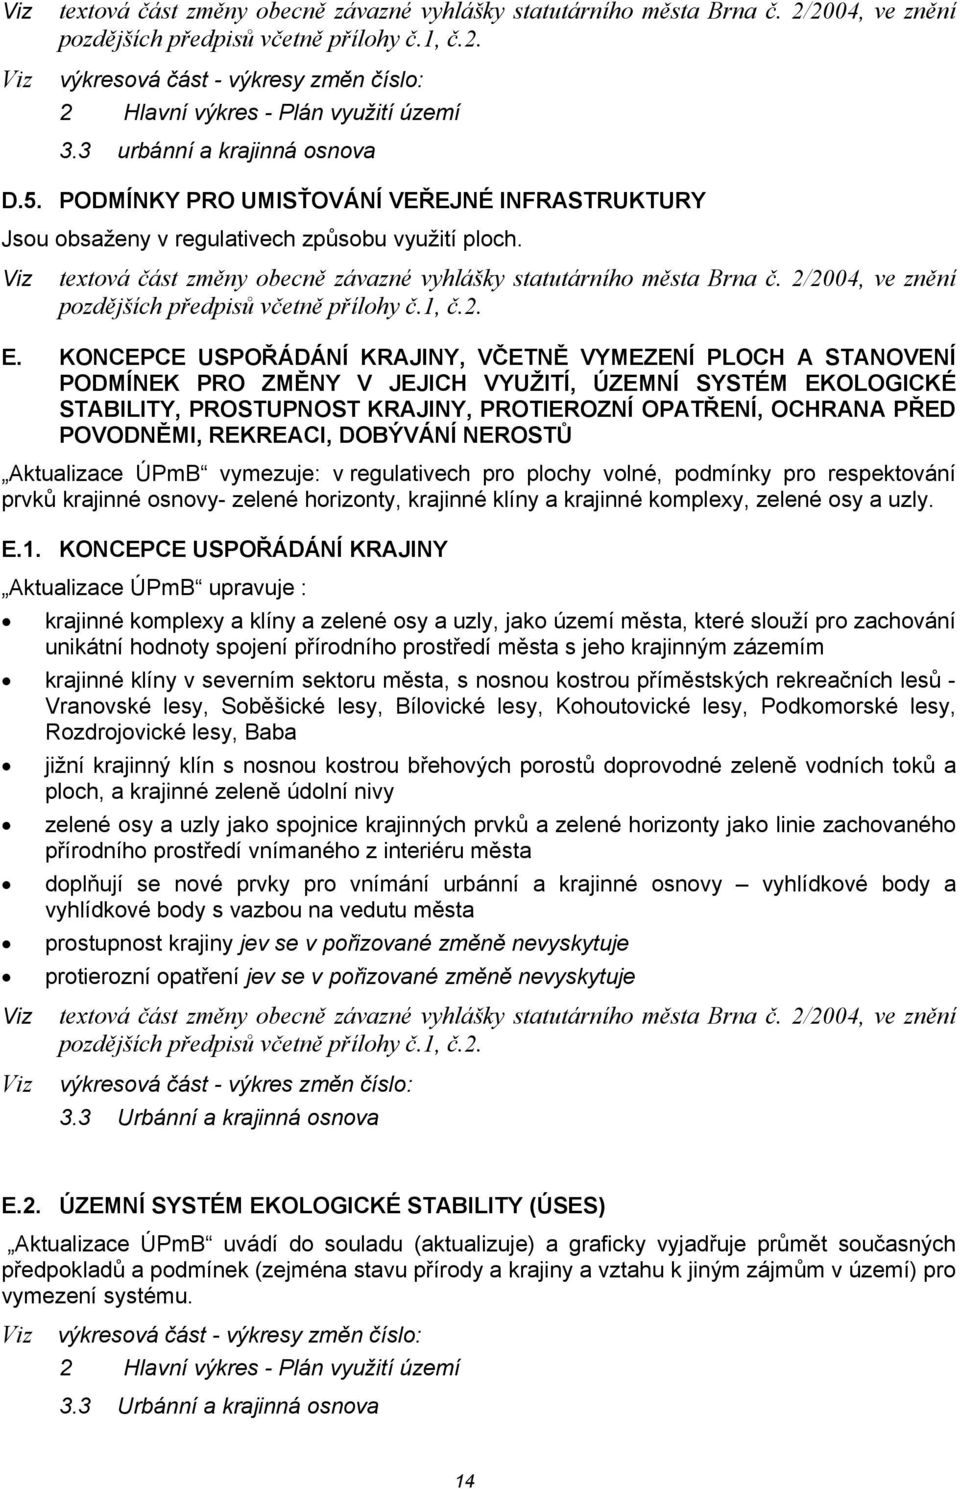 Viz textová část změny obecně závazné vyhlášky statutárního města Brna č. 2/2004, ve znění pozdějších předpisů včetně přílohy č.1, č.2. E.